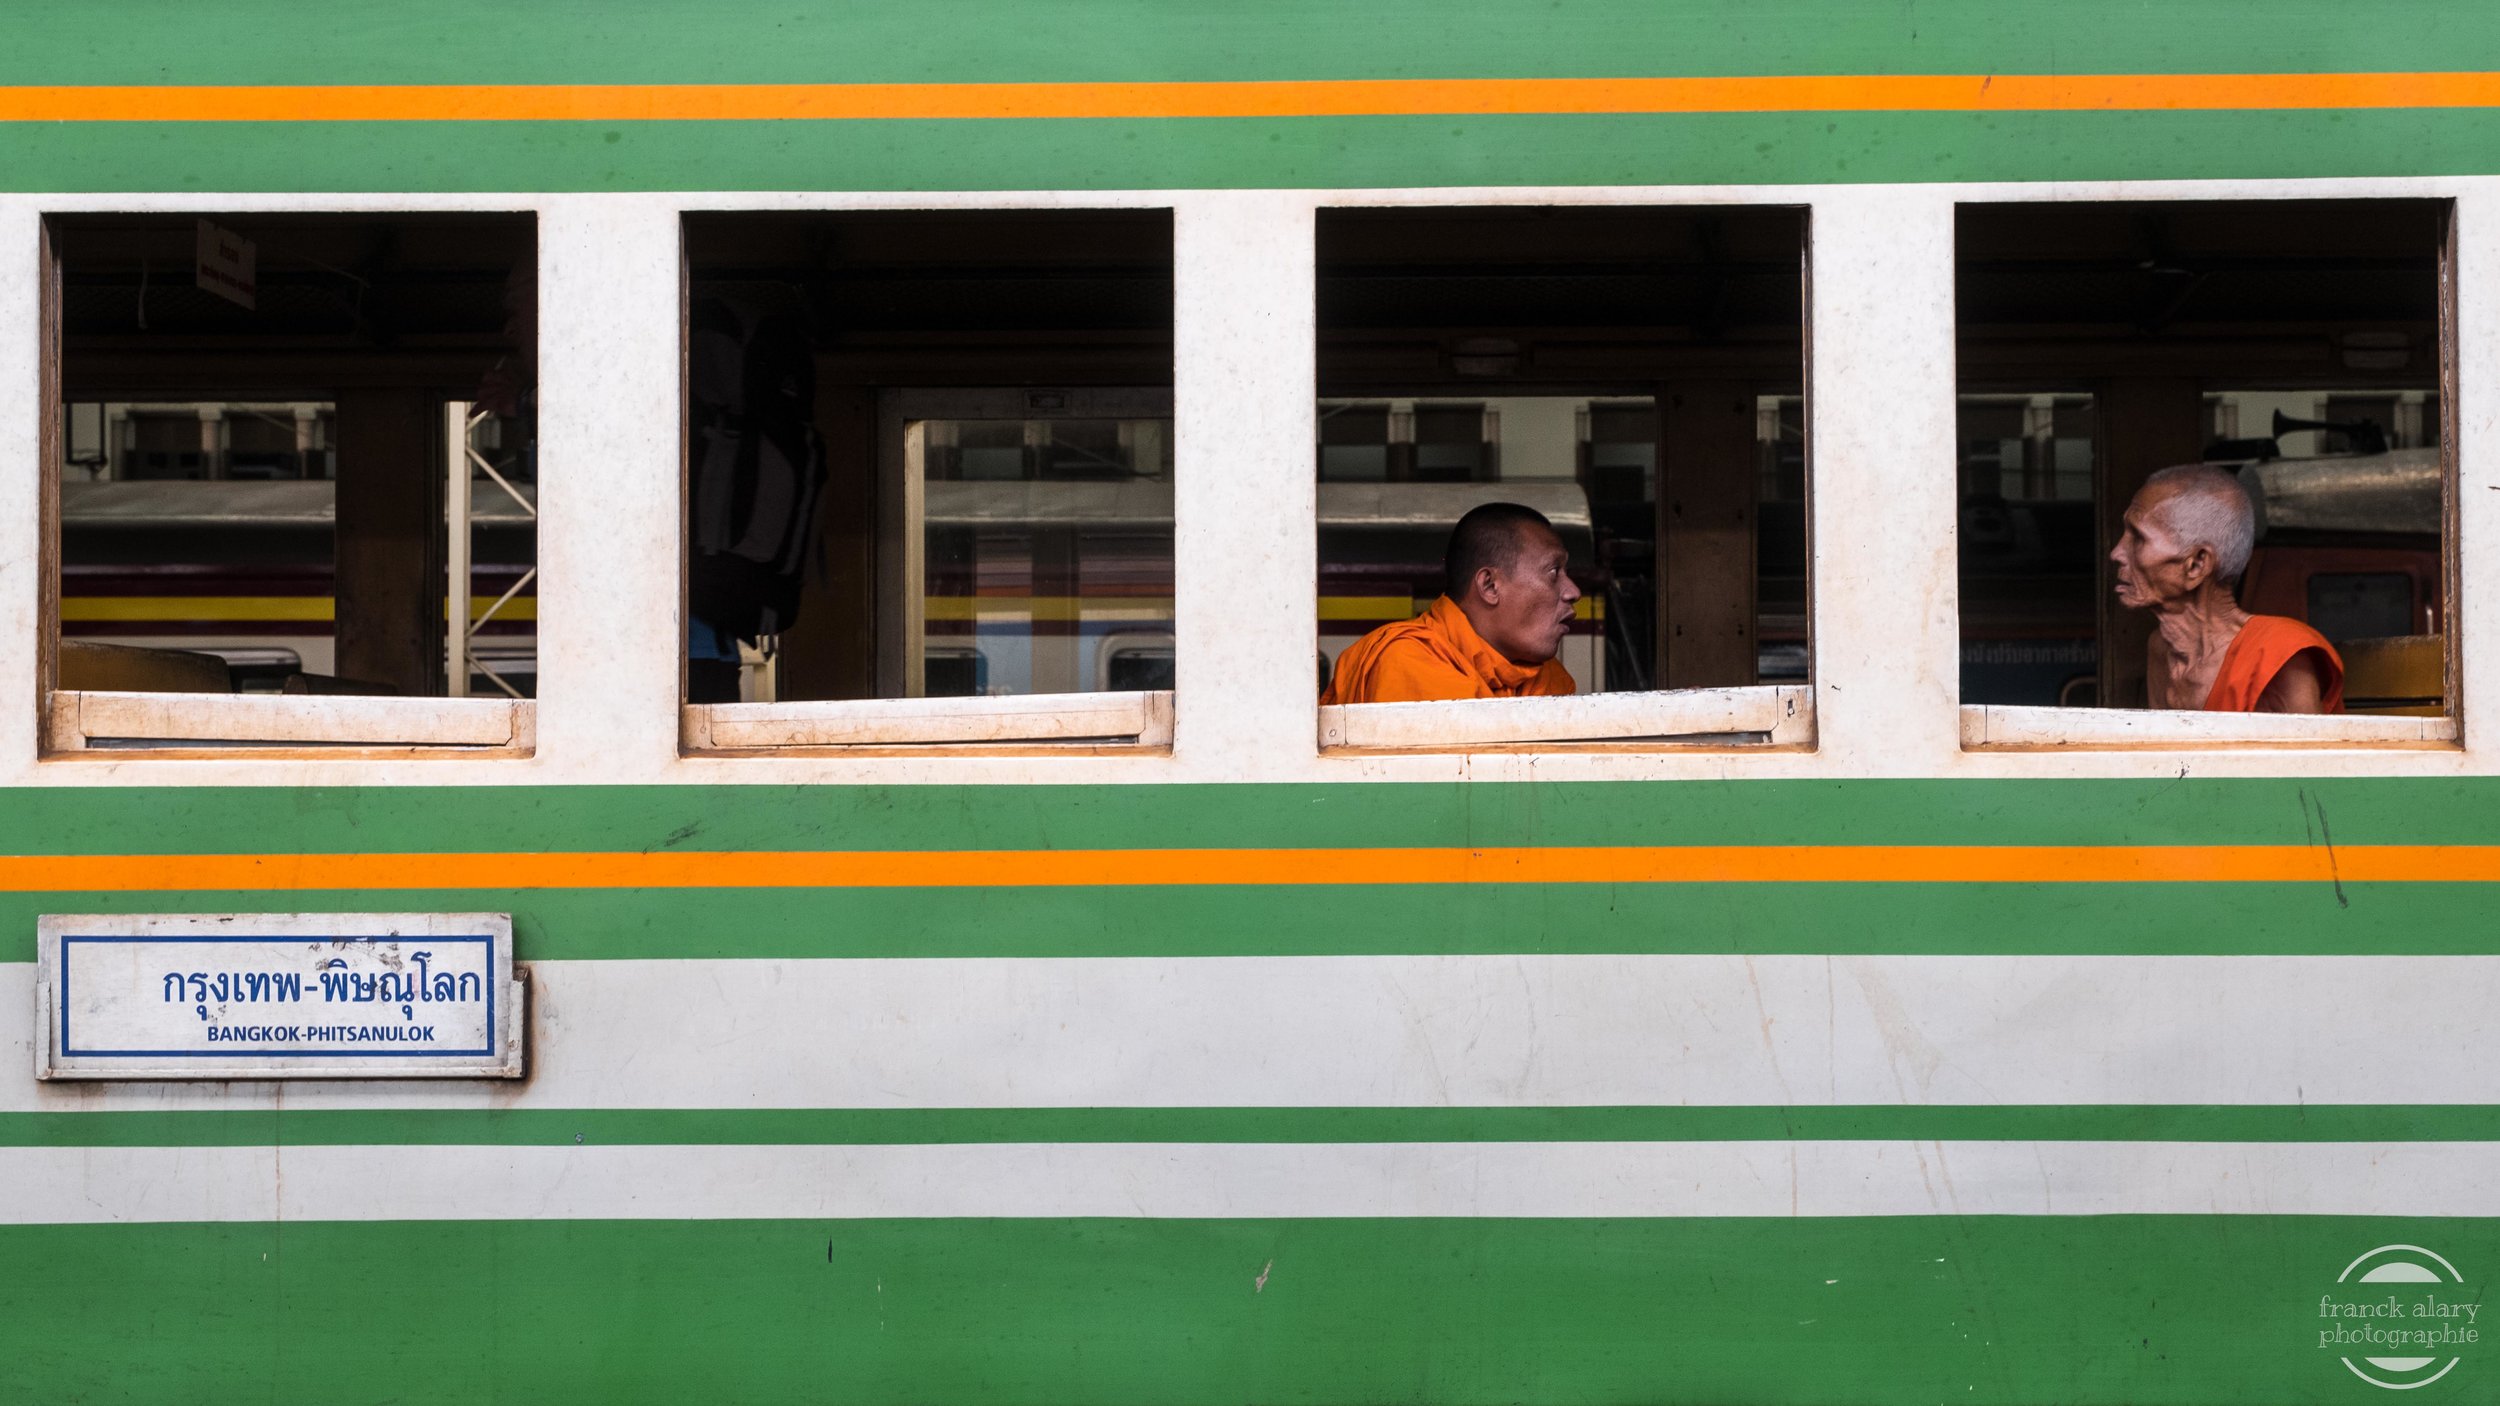   En attendant le départ du train   Pour les moines bouddhistes toute possession matérielle est futile. Ils &nbsp;ne possèdent en tout et pour tout que leurs habits, un rasoir, une aiguille, et un bol. Pour le reste, les moines ne peuvent compter que